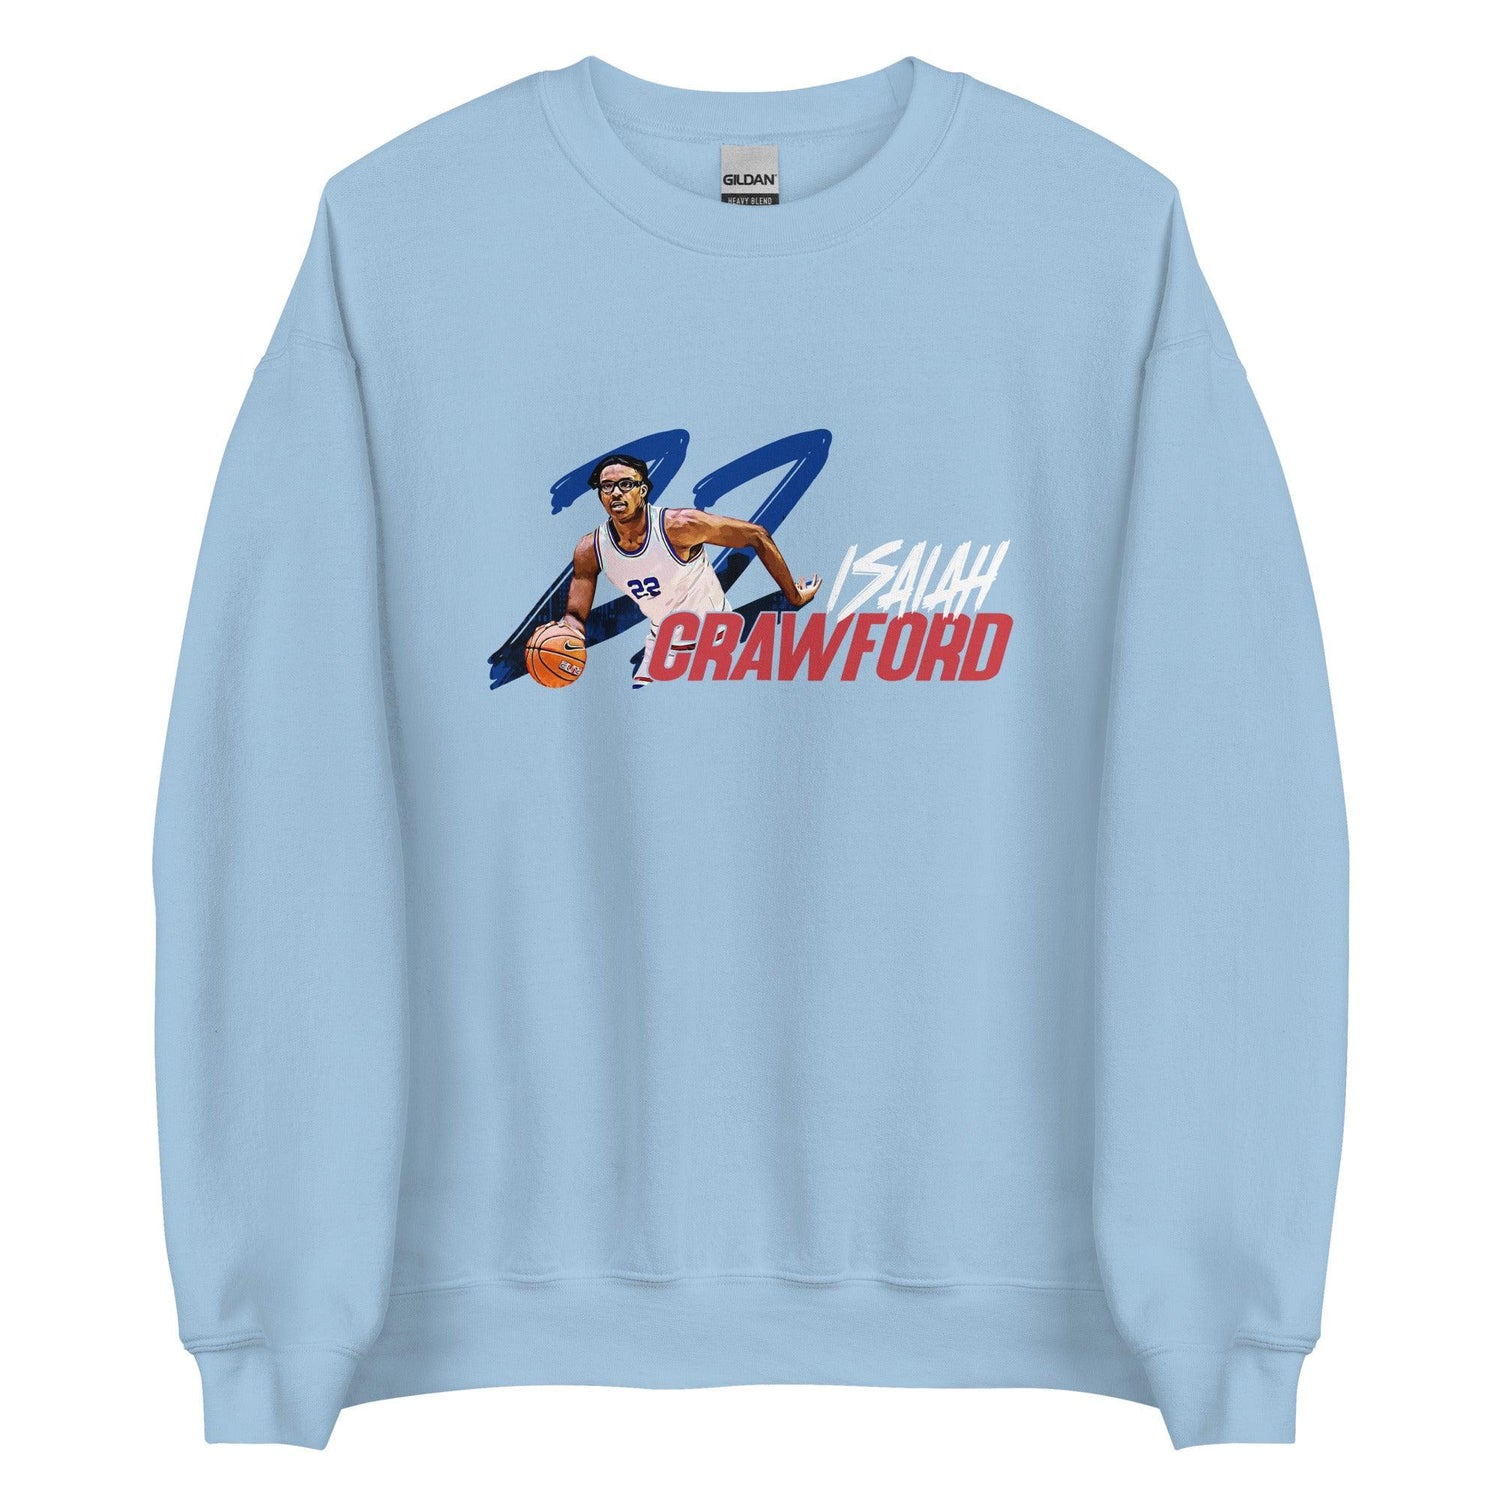 Isaiah Crawford "Gameday" Sweatshirt - Fan Arch